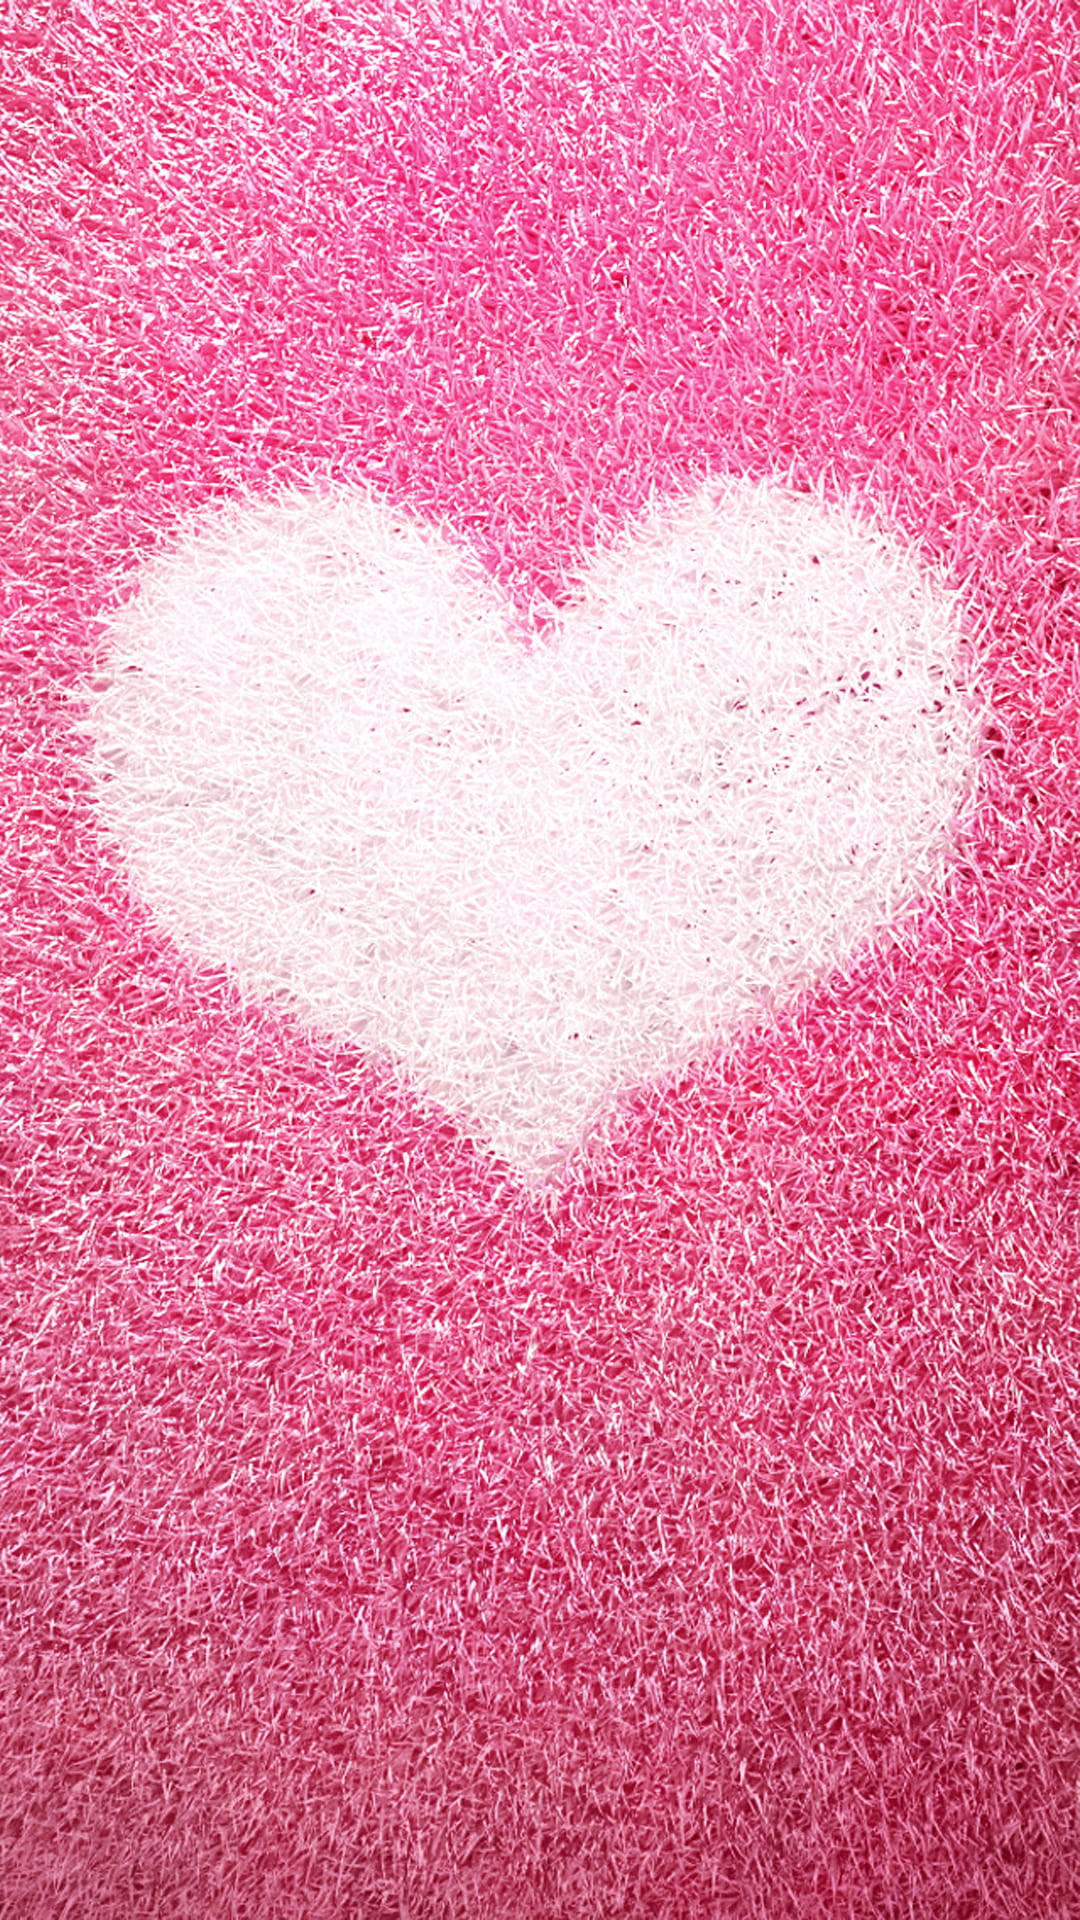 Textured Pink Heart